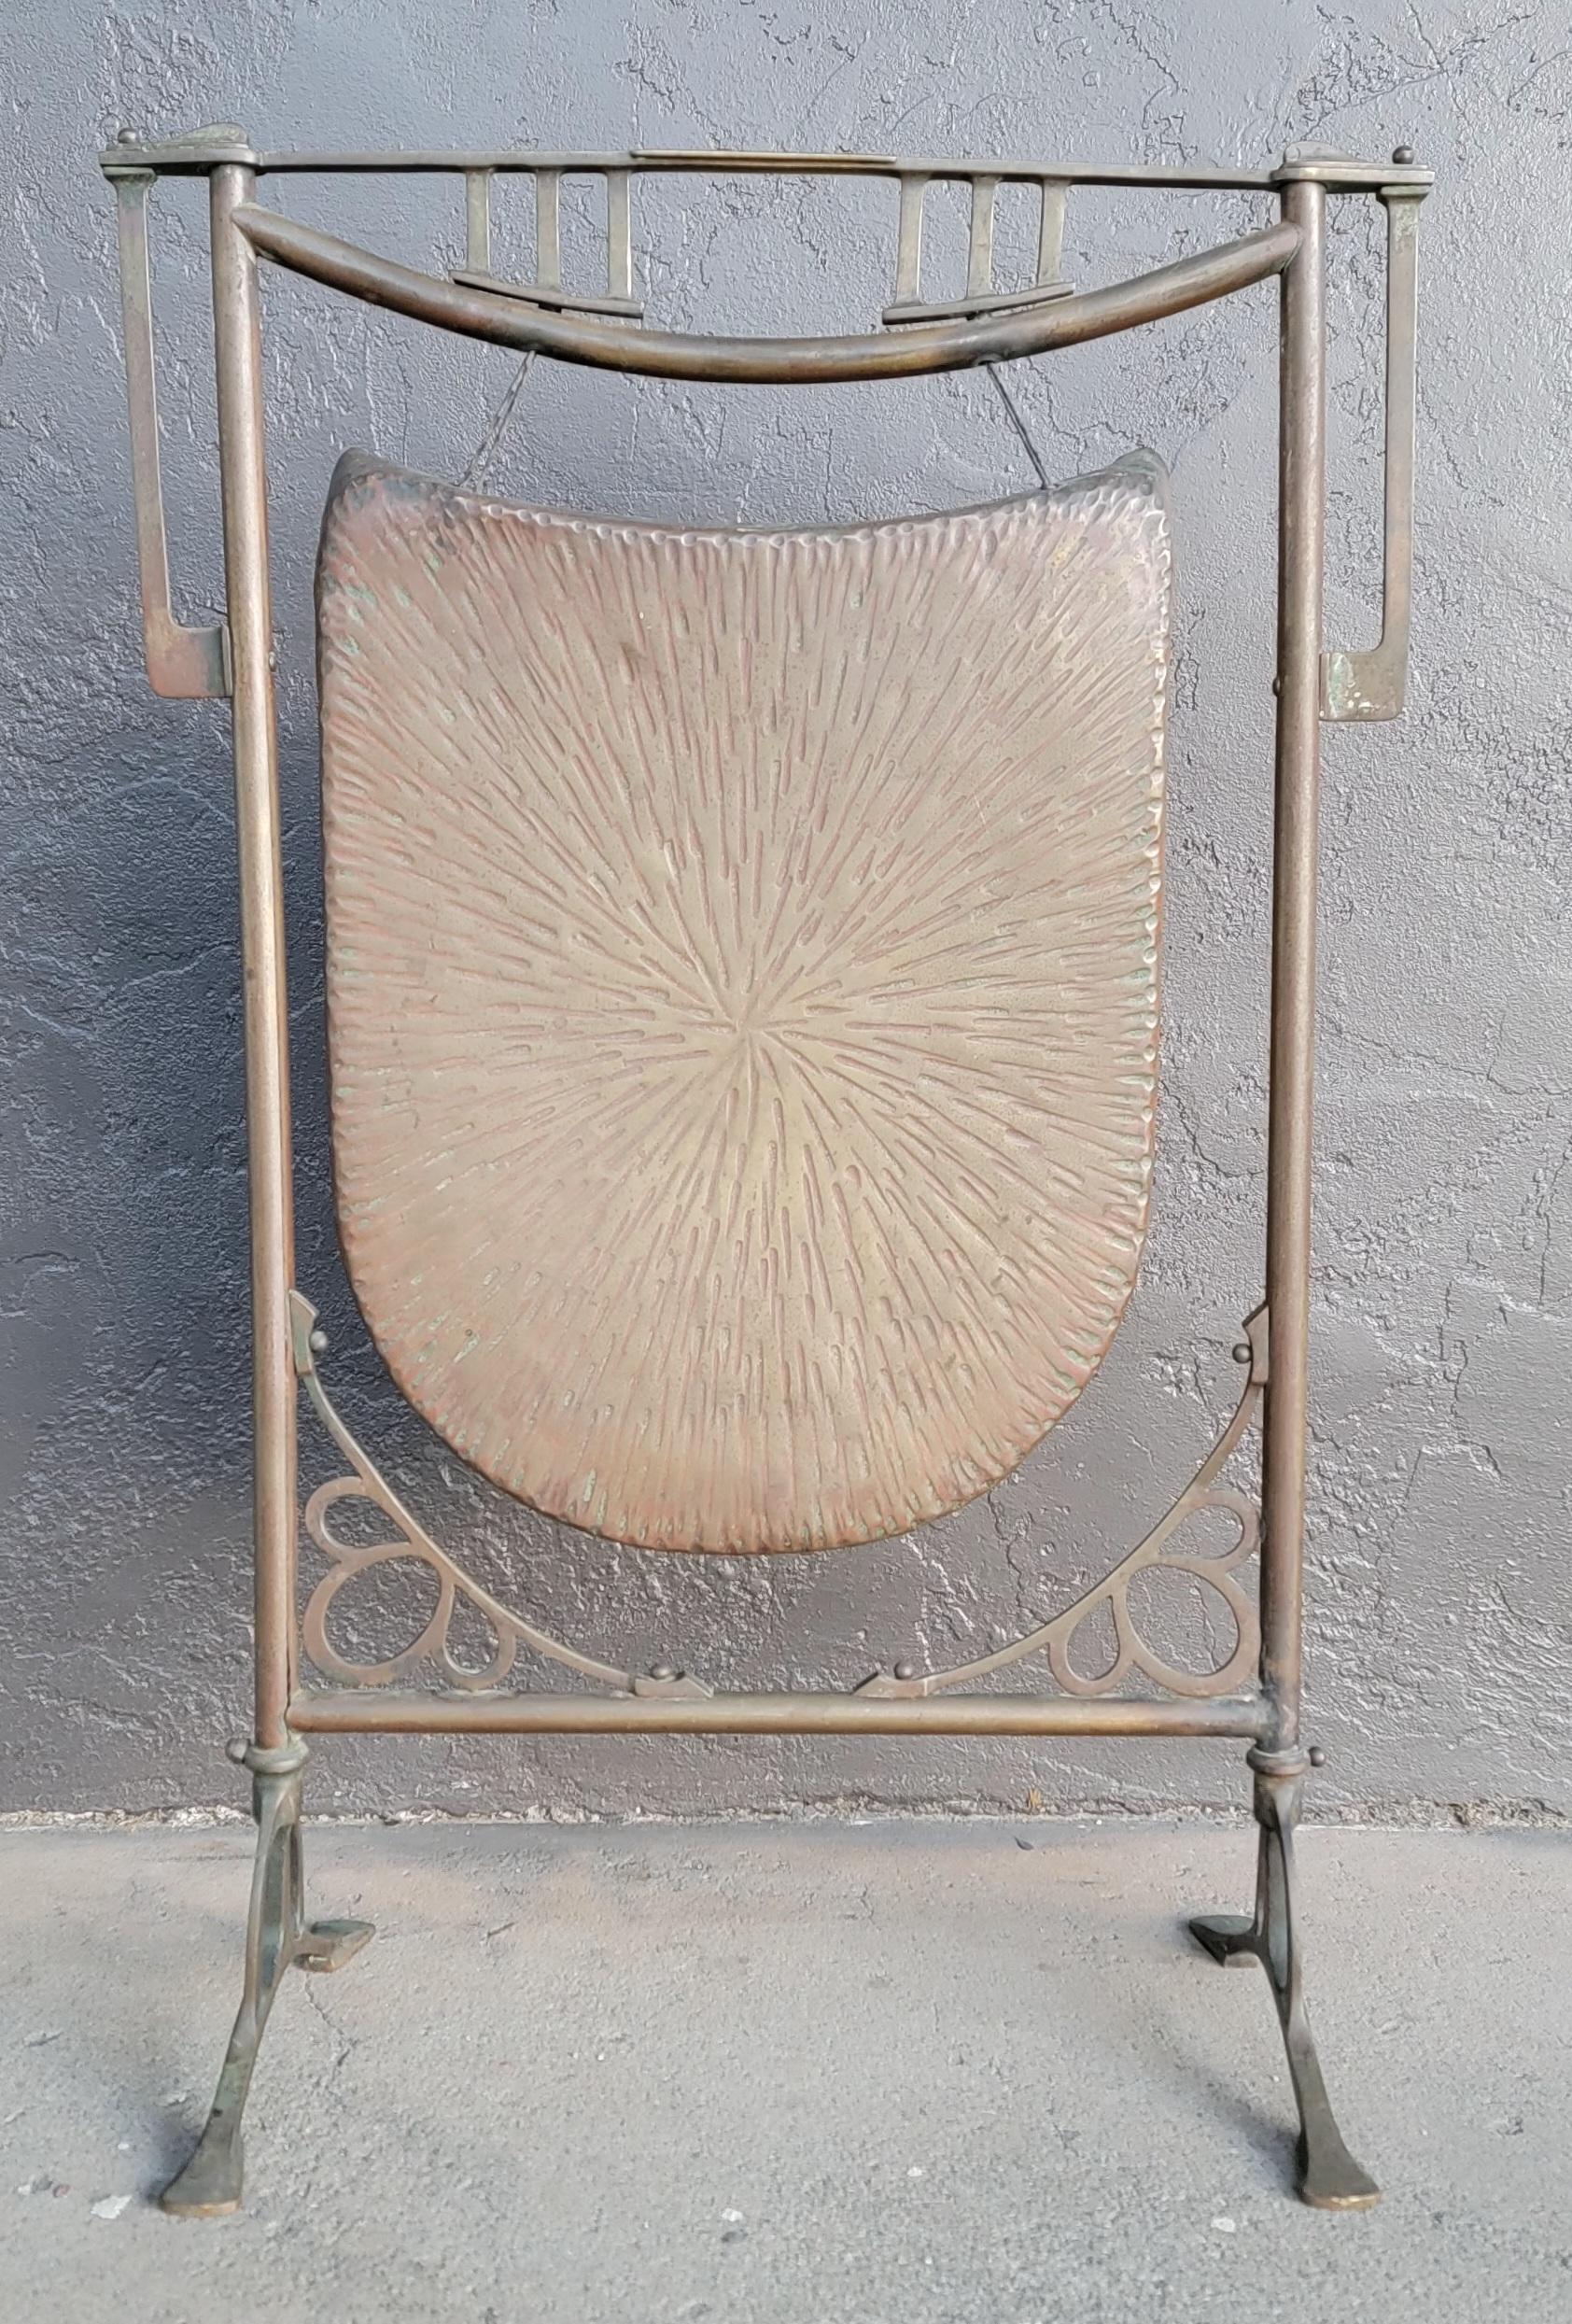 Un gong de transition Art Nouveau / Arts & Crafts en cuivre et laiton martelé massif. Circa. 1910. La gâche n'est pas d'origine.